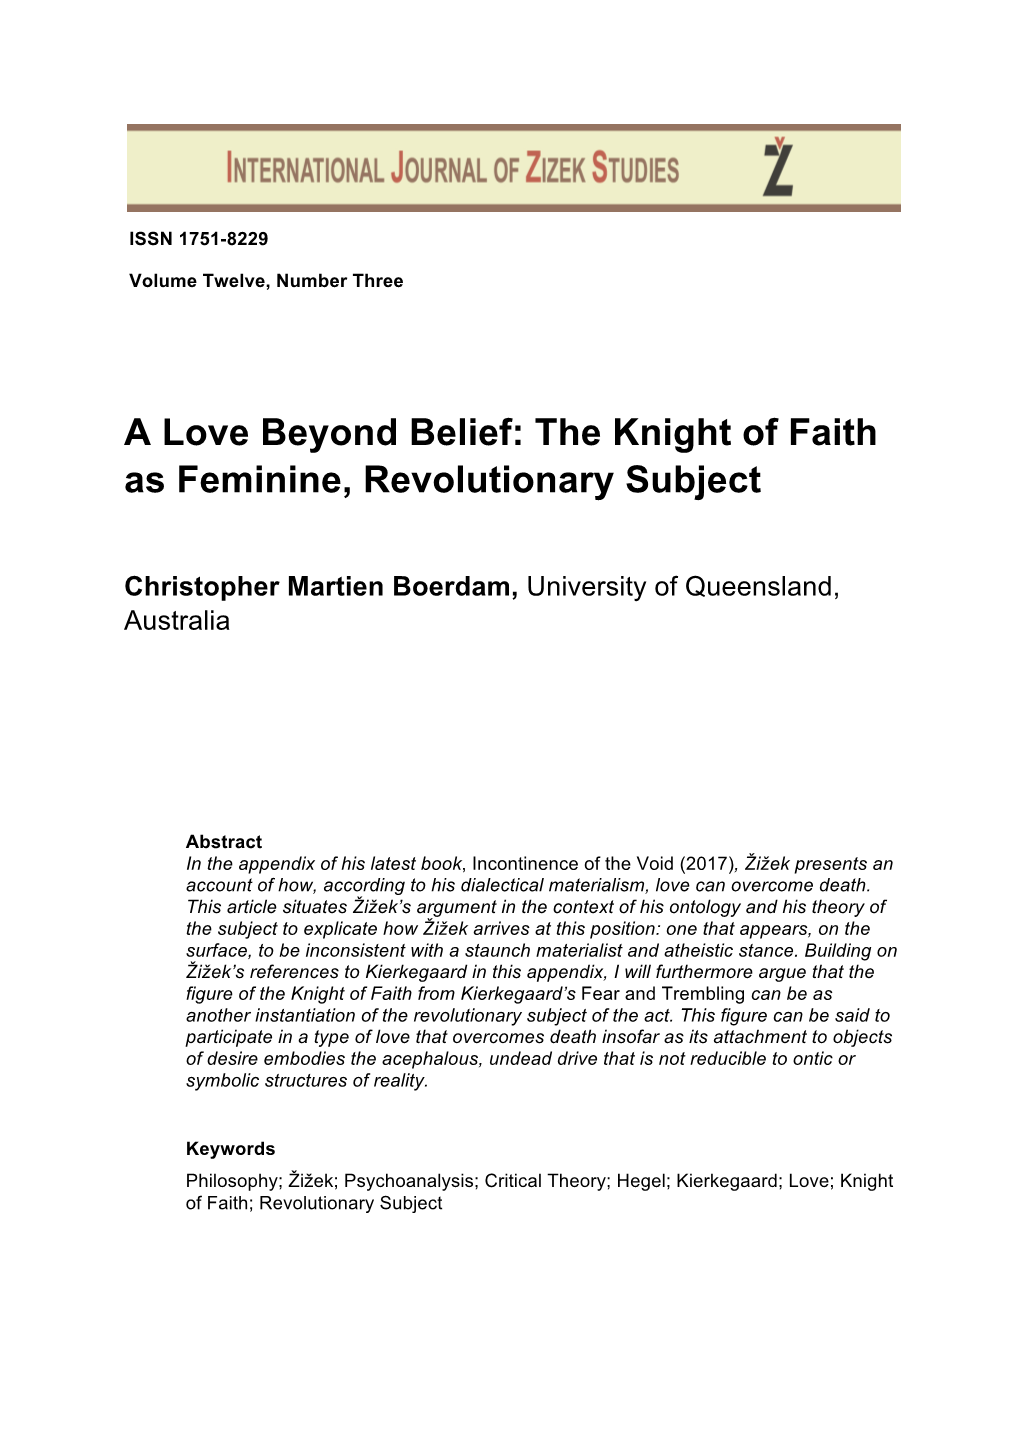 The Knight of Faith As Feminine, Revolutionary Subject